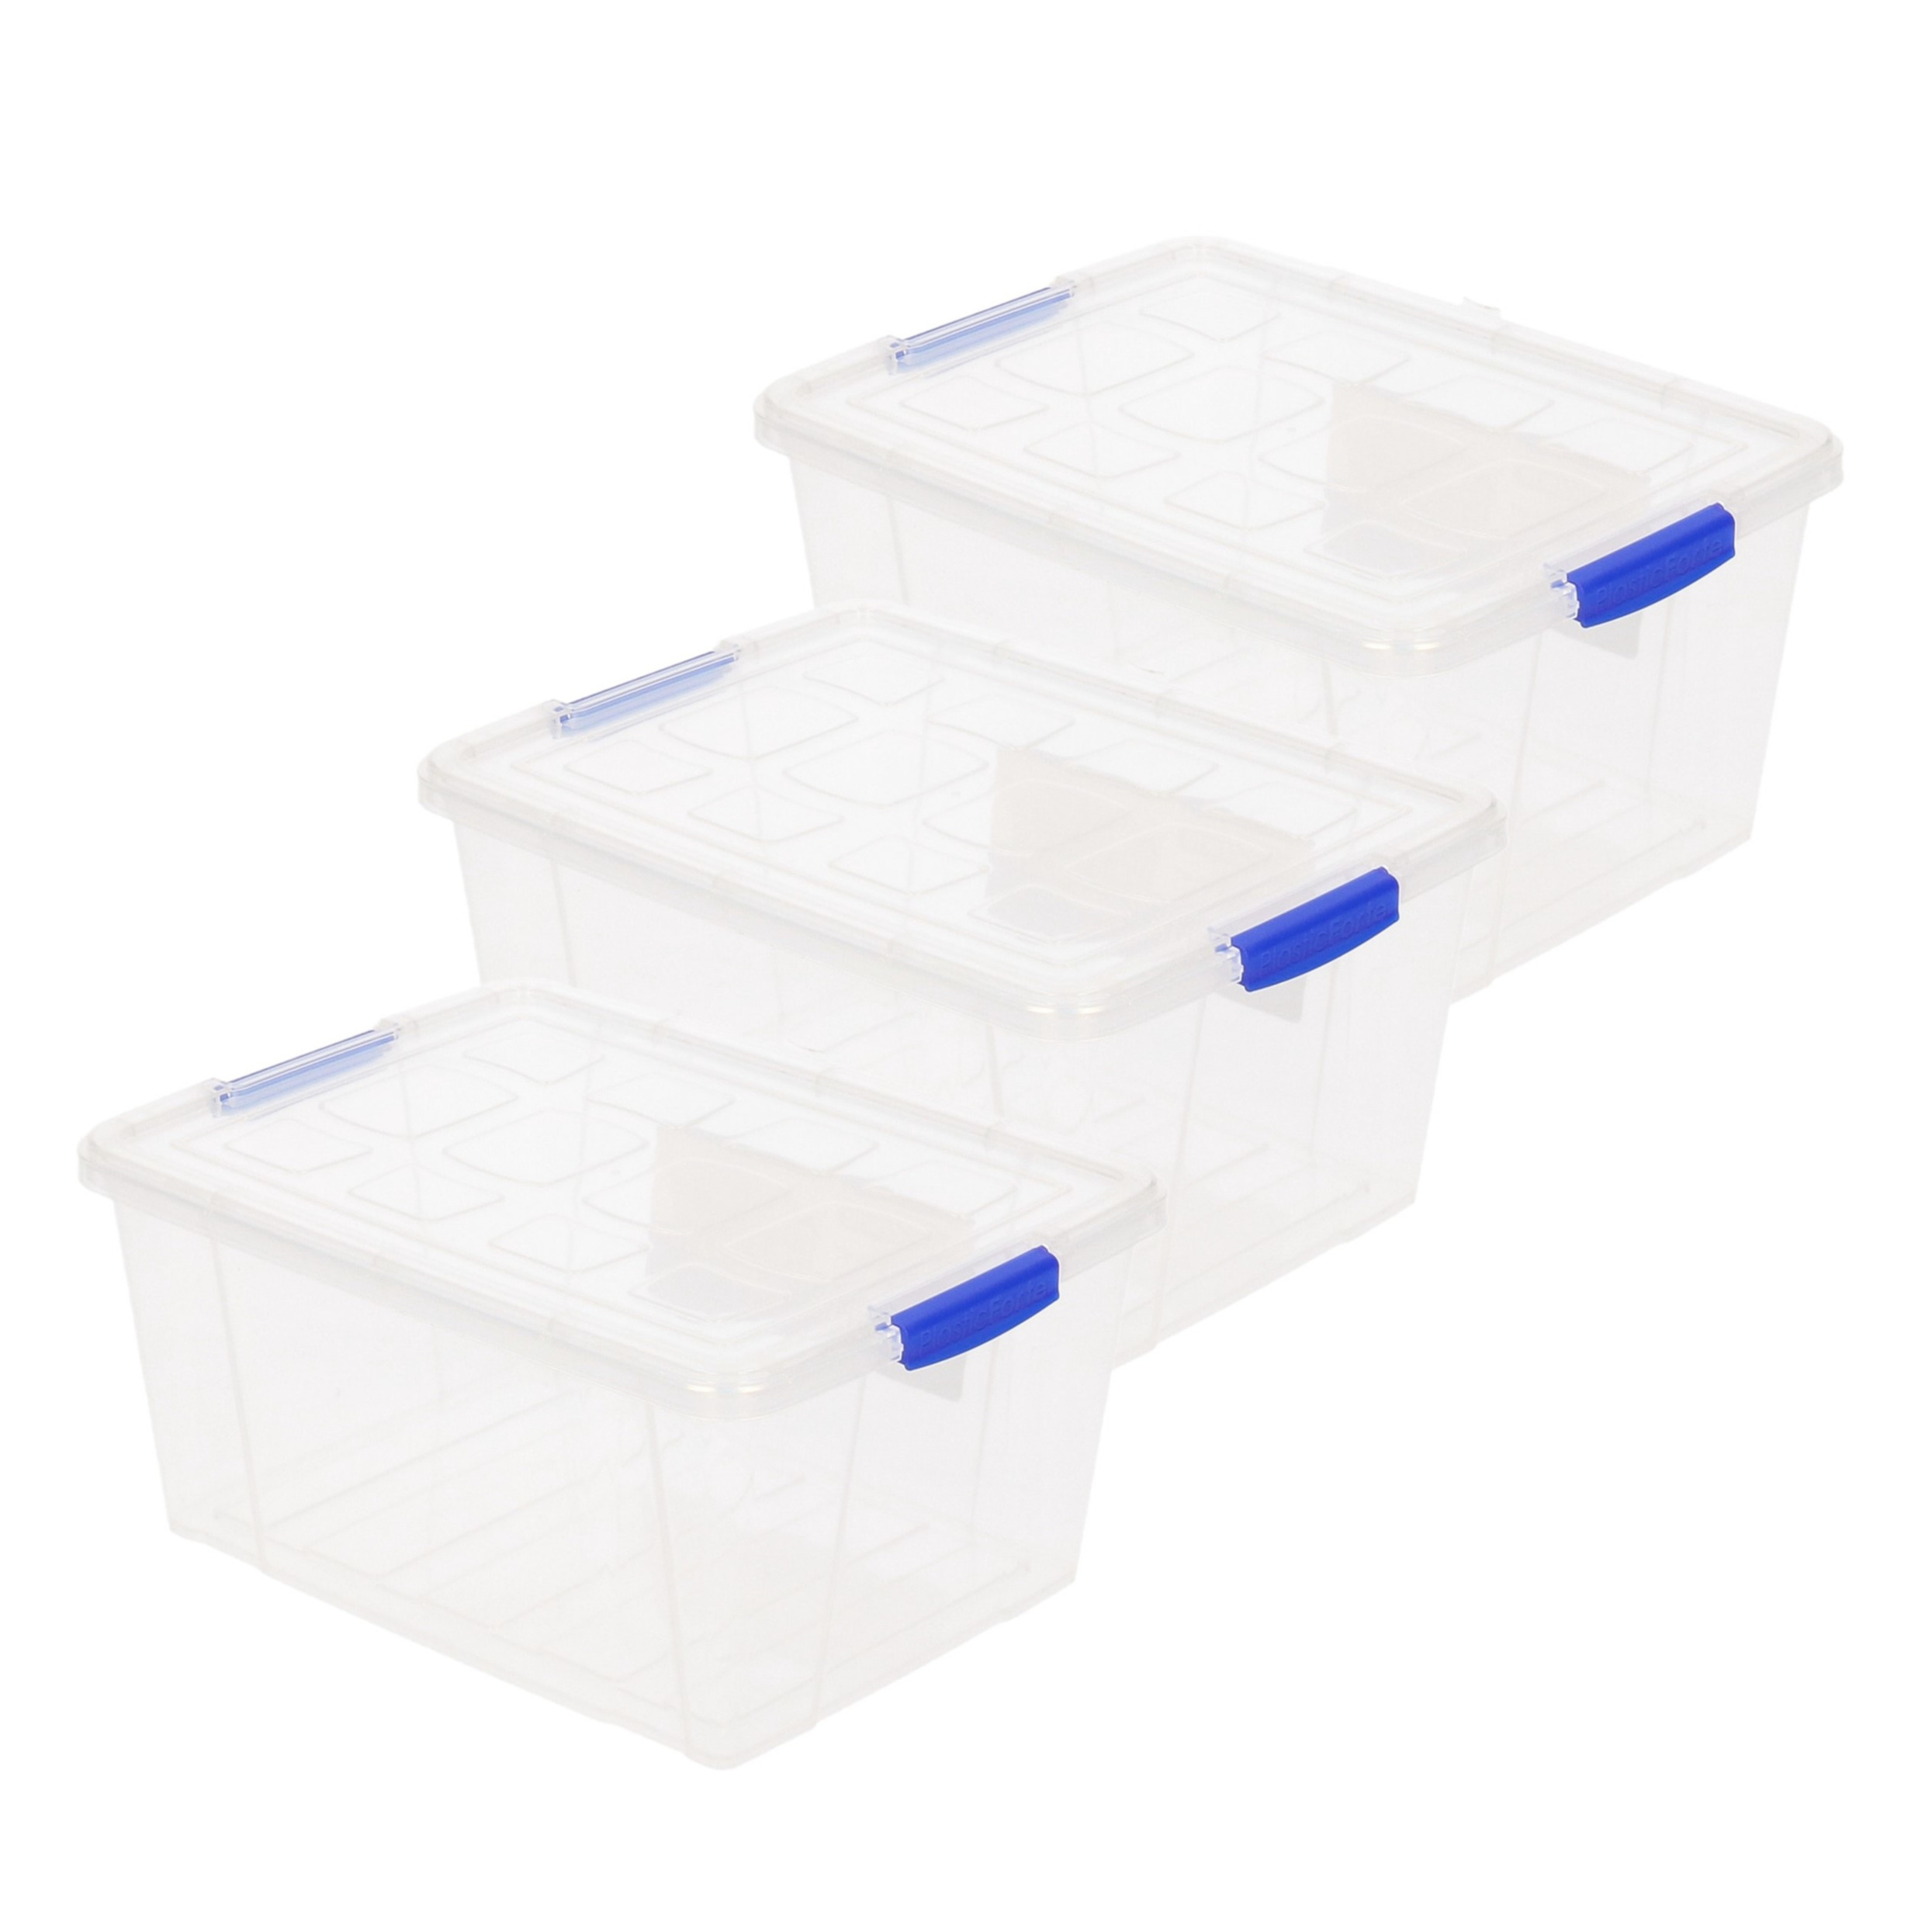 6x stuks opslagboxen-bakken-organizers met deksel 16 liter 40 x 30 x 21 cm transparant plastic